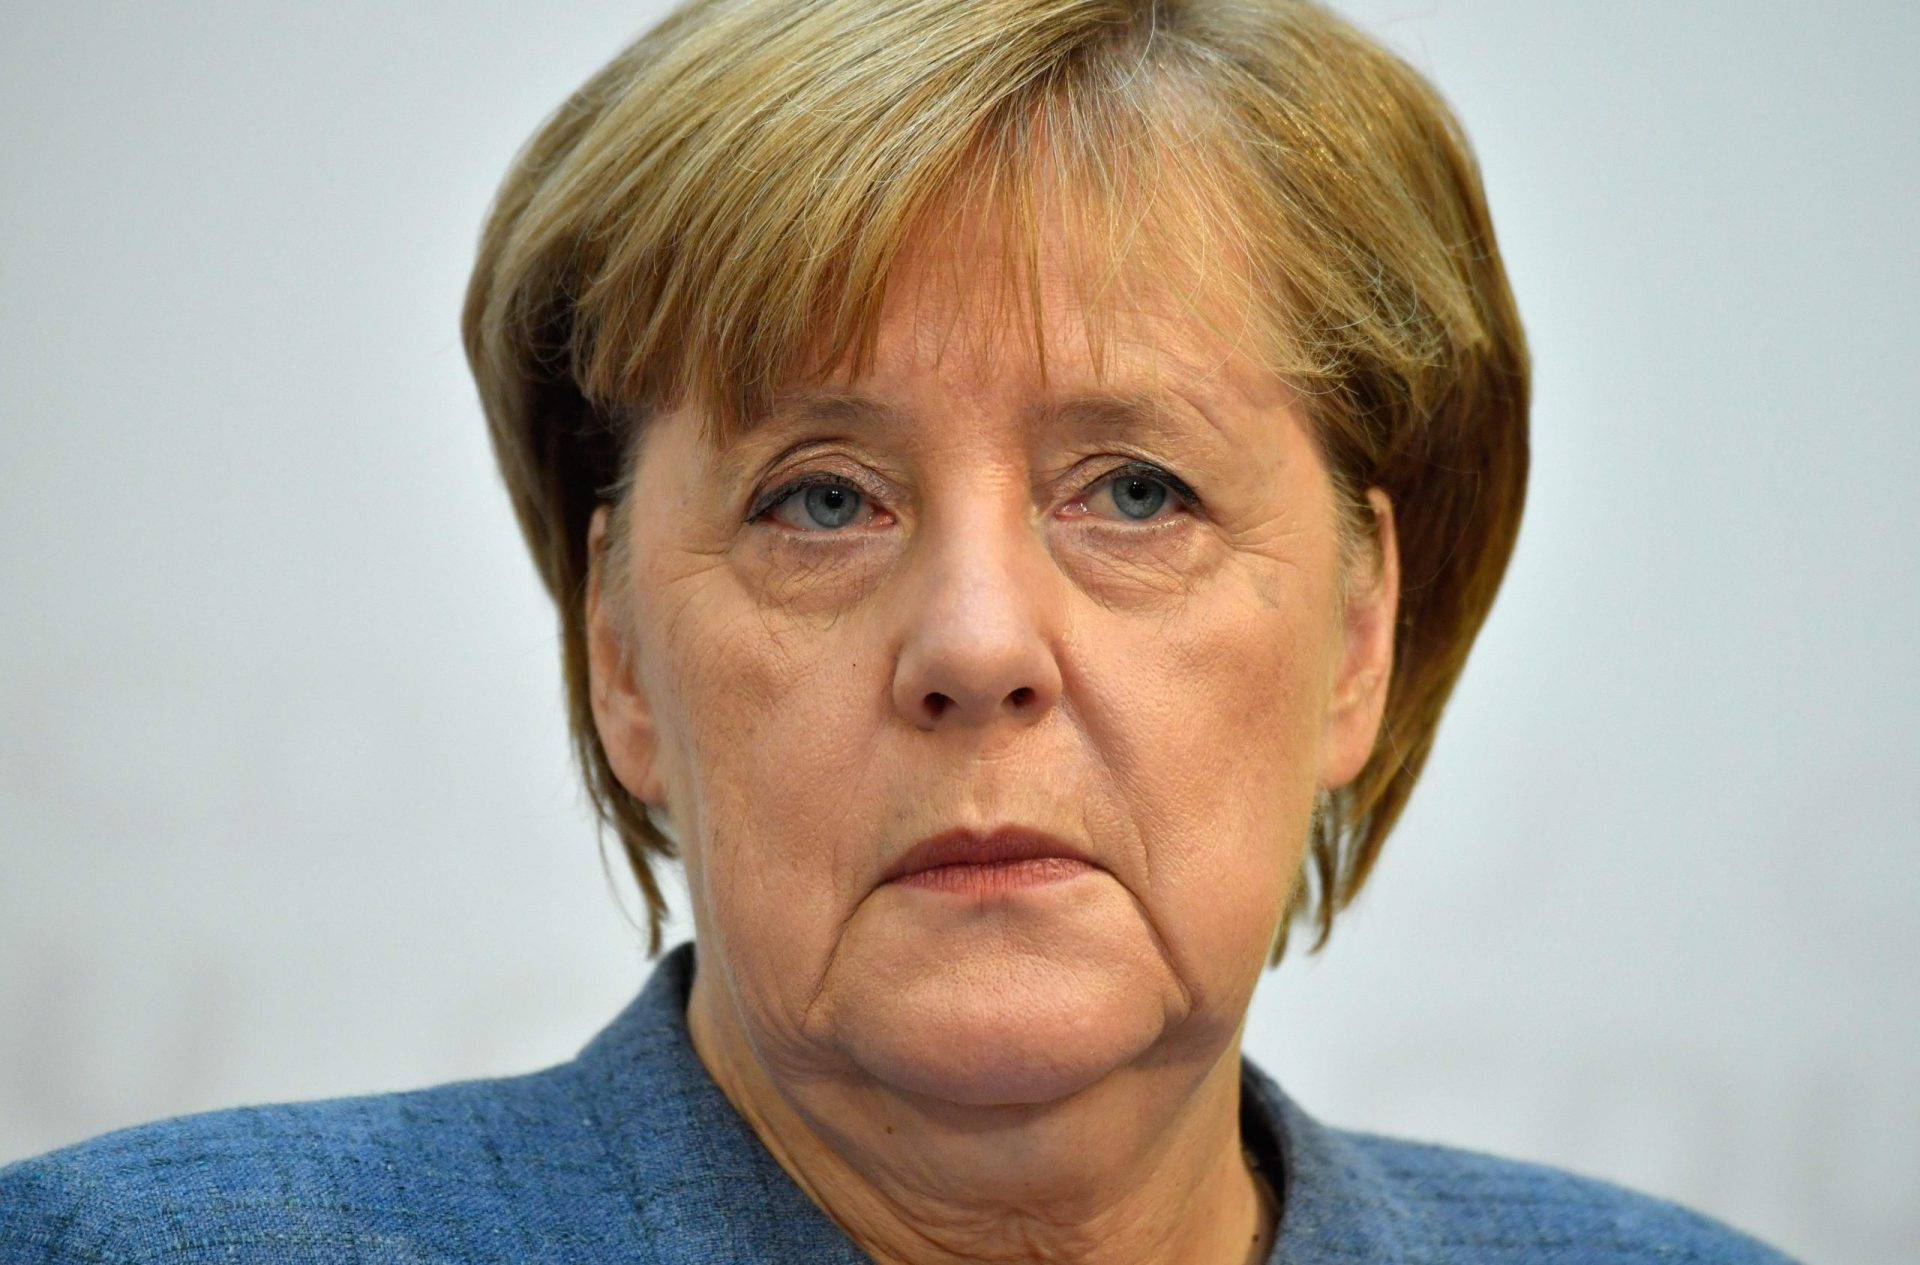 Alemanha. Merkel caminha, mas ainda não masca pastilha